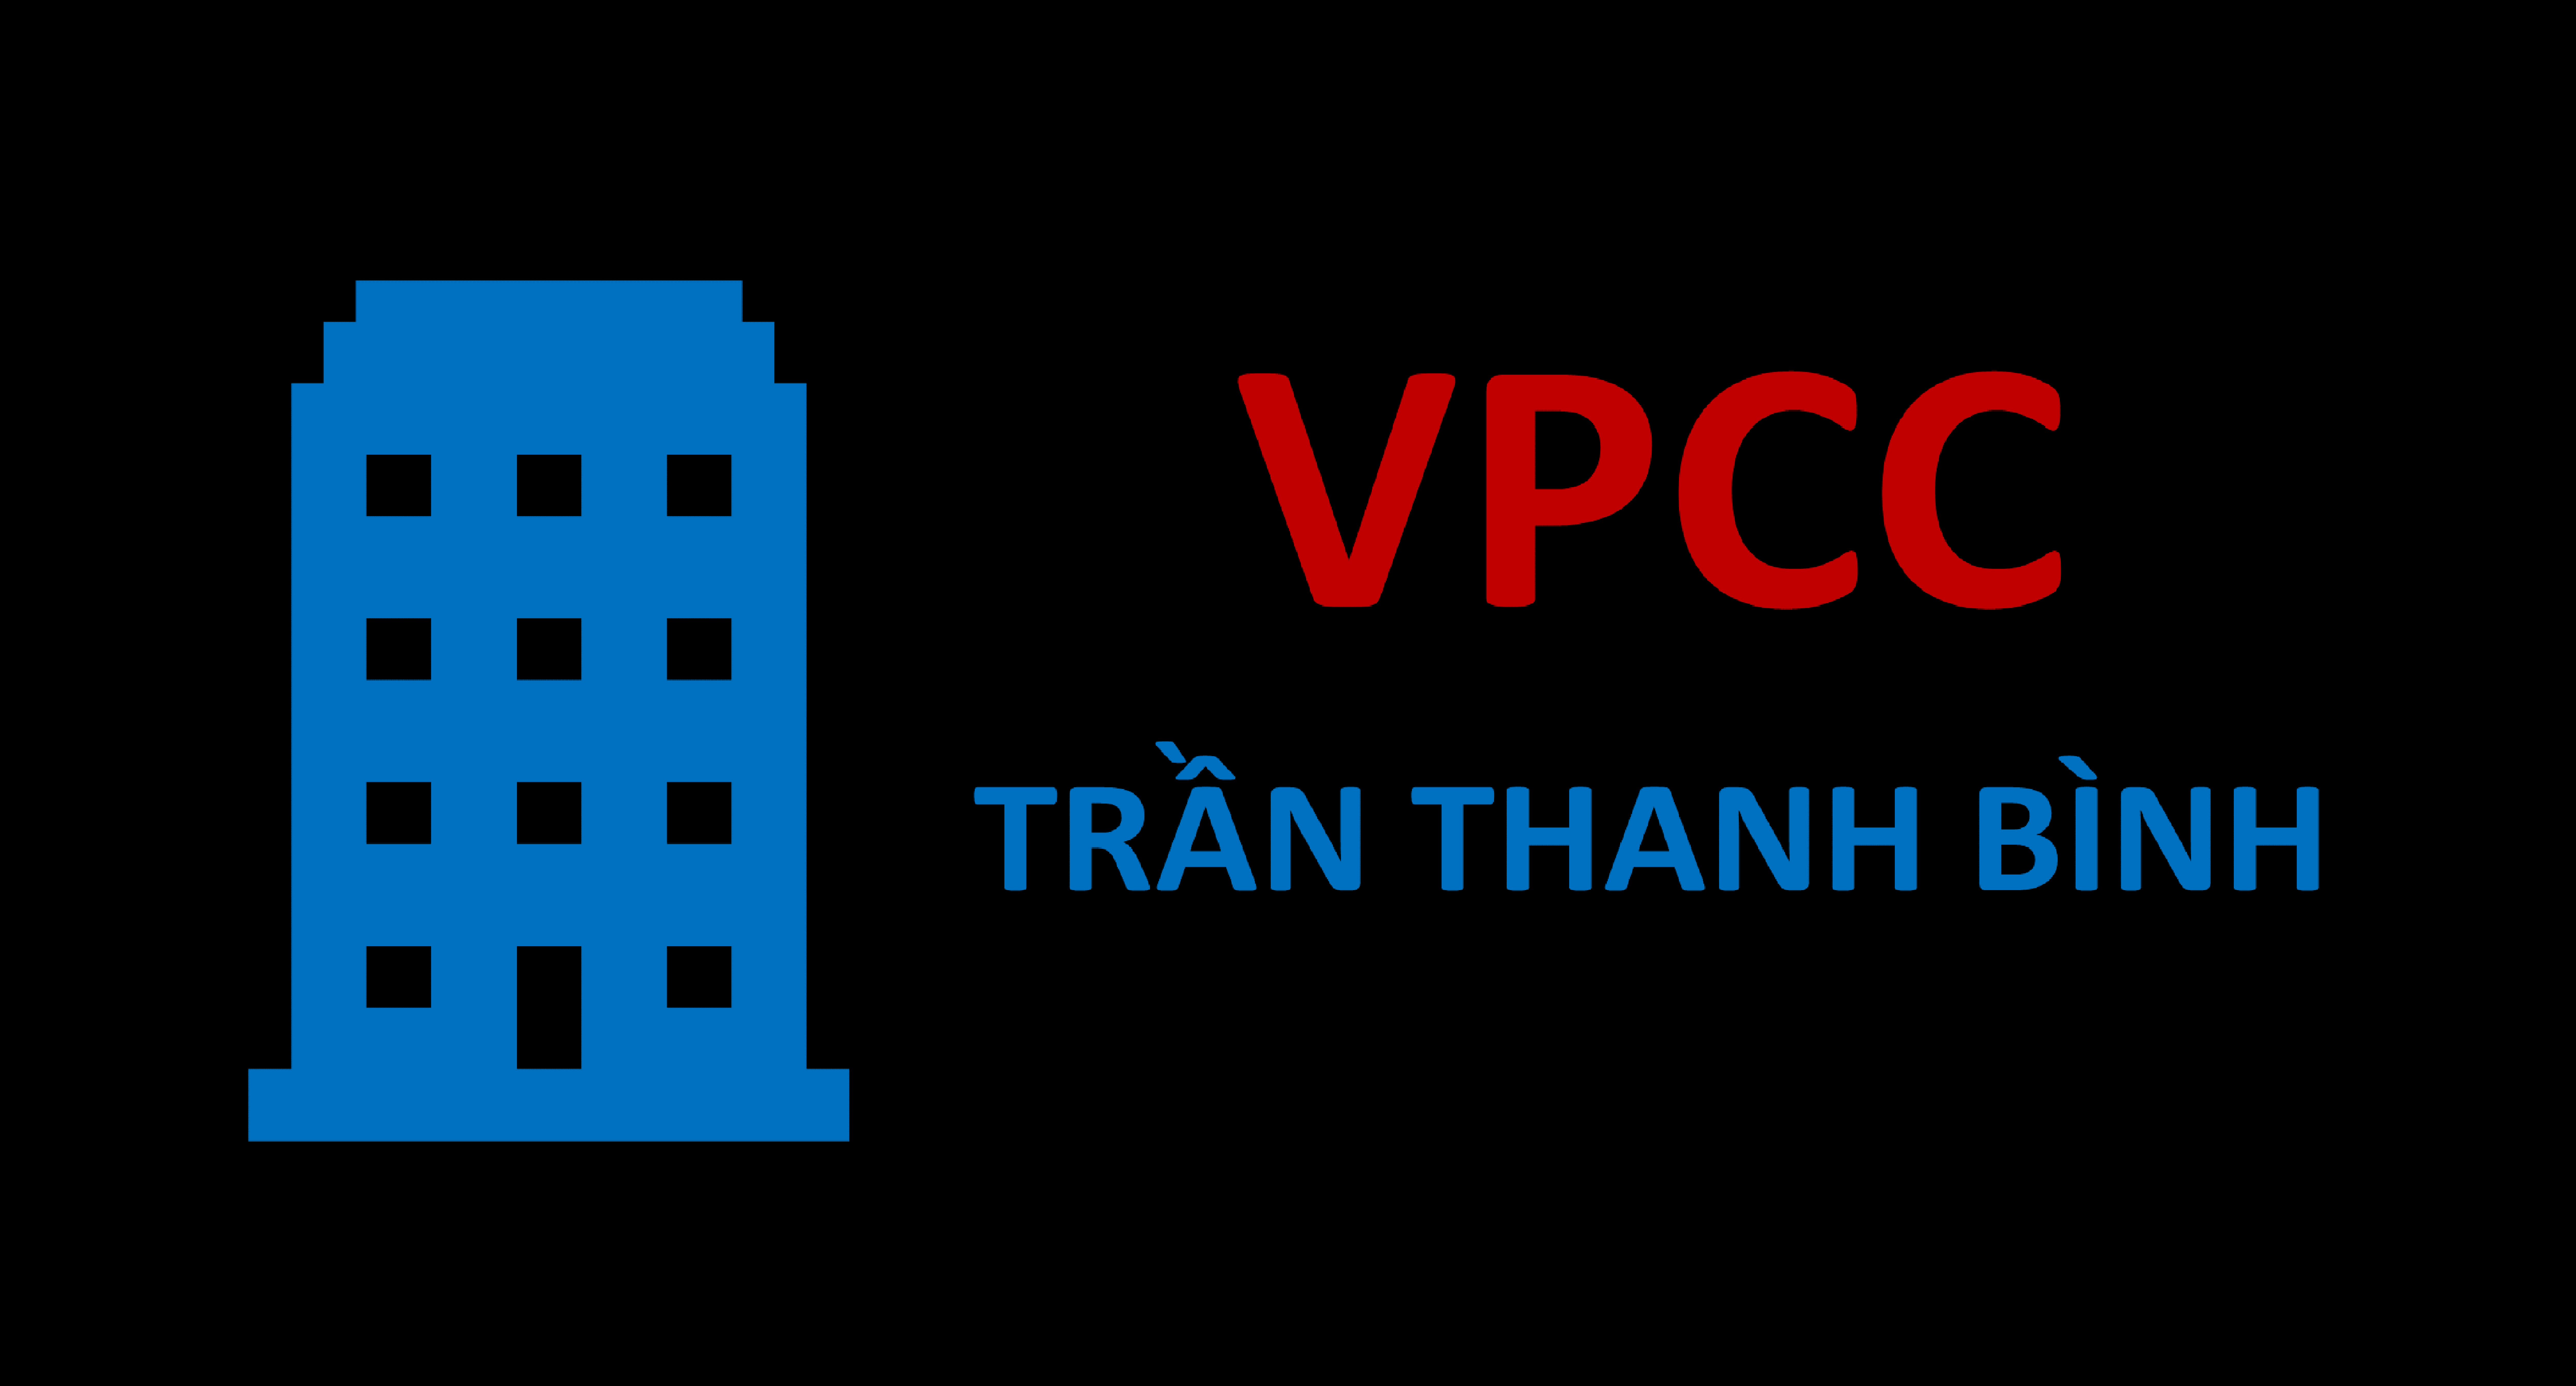 VPCC Trần Thanh Bình